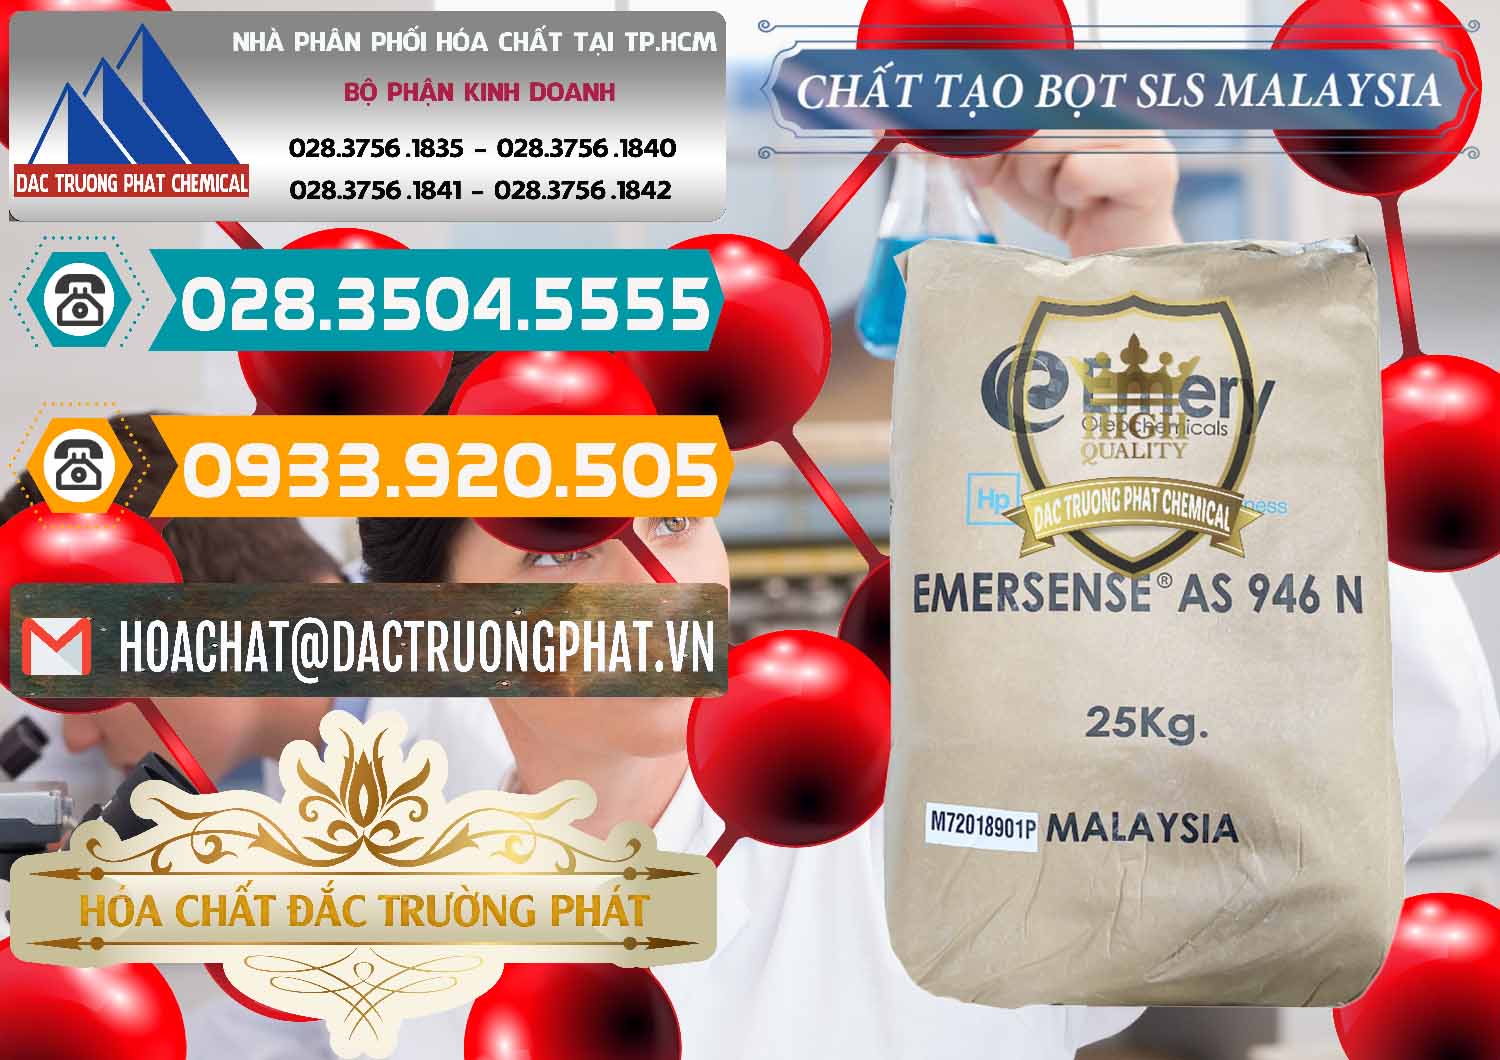 Đơn vị bán và phân phối Chất Tạo Bọt SLS Emery - Emersense AS 946N Mã Lai Malaysia - 0423 - Chuyên nhập khẩu và cung cấp hóa chất tại TP.HCM - congtyhoachat.vn